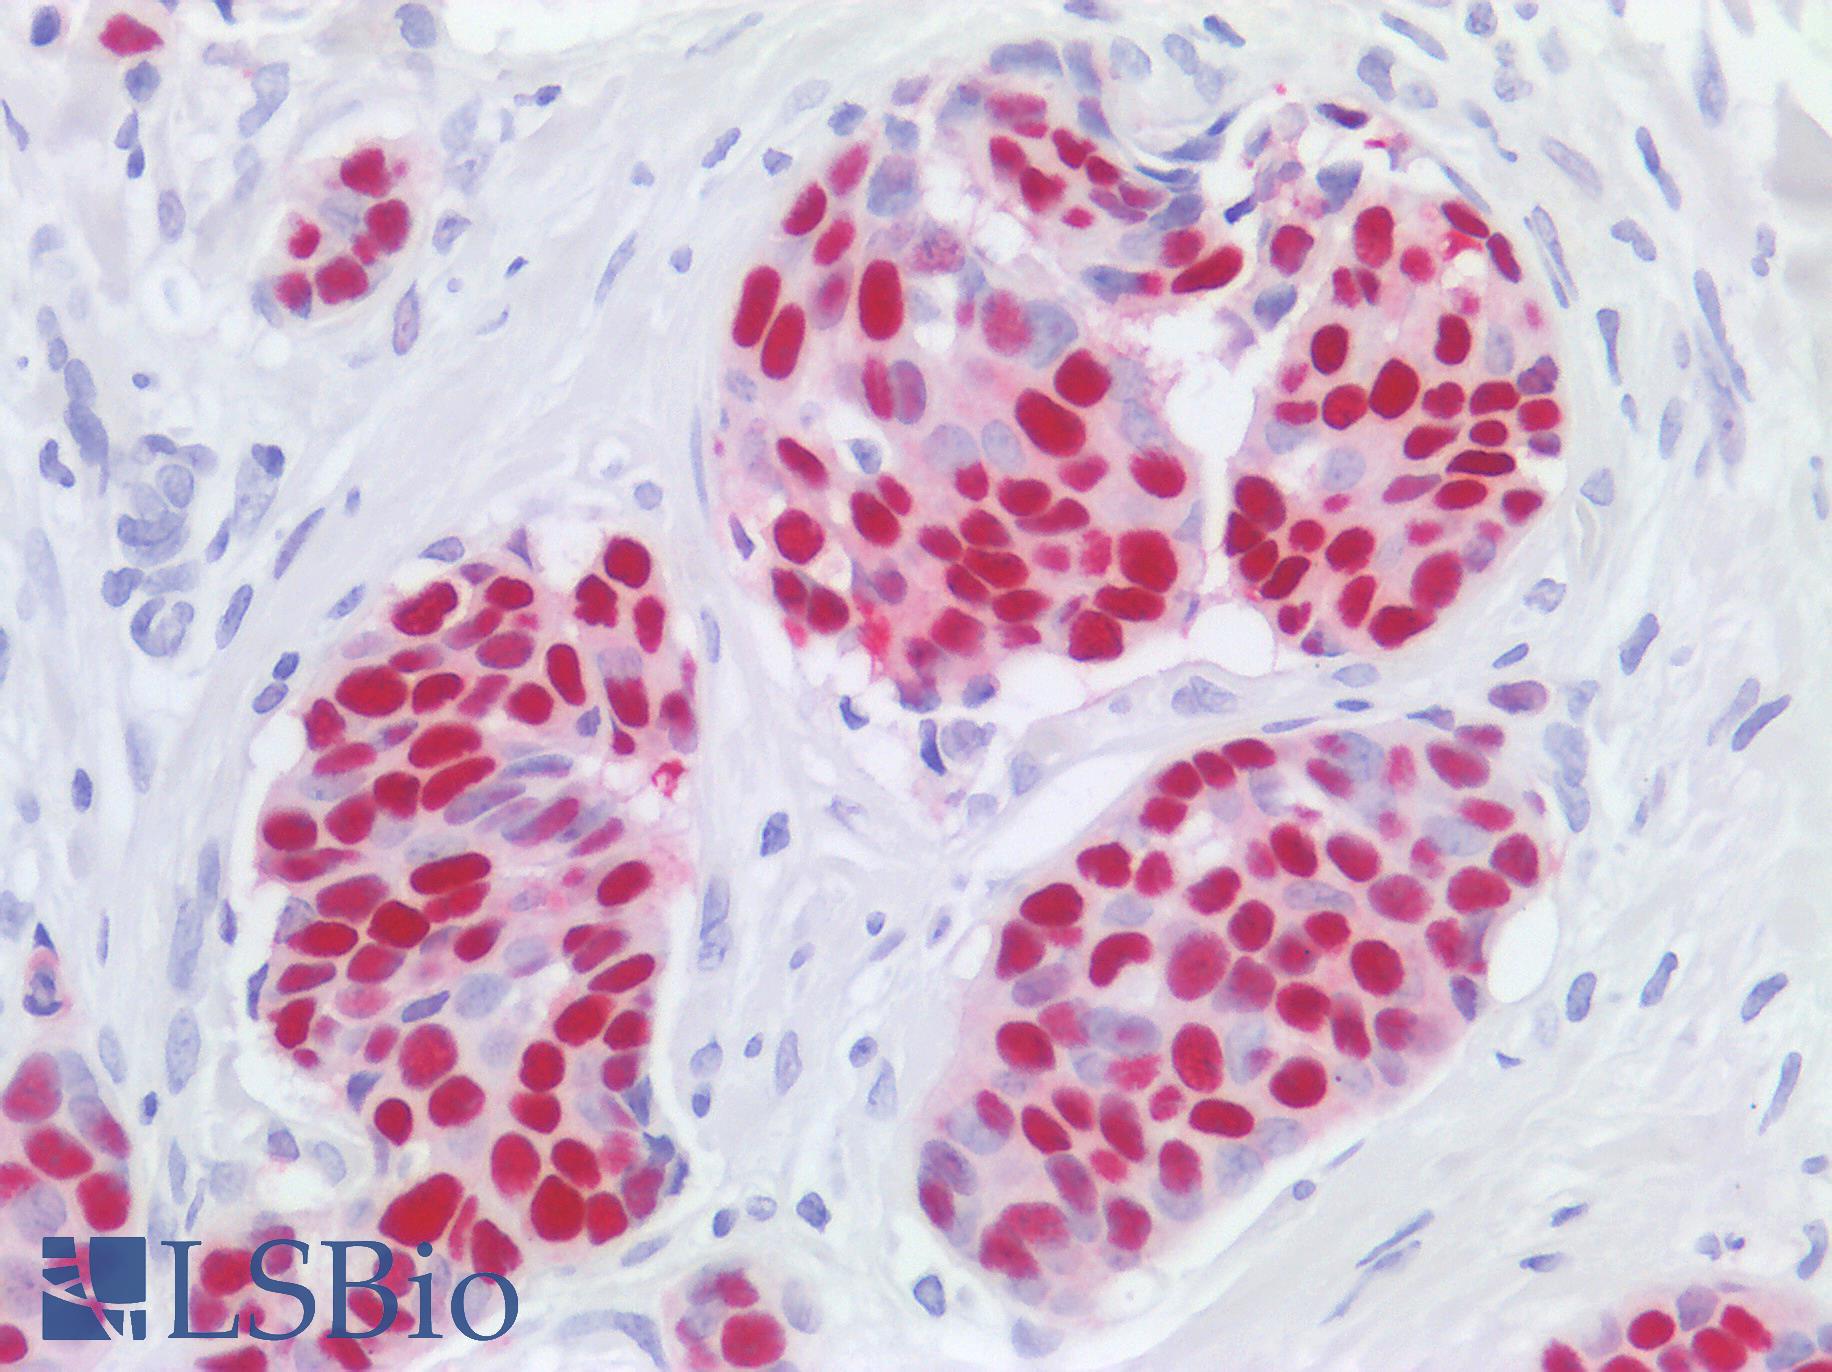 ER Alpha / Estrogen Receptor Antibody - Human Breast: Formalin-Fixed, Paraffin-Embedded (FFPE)